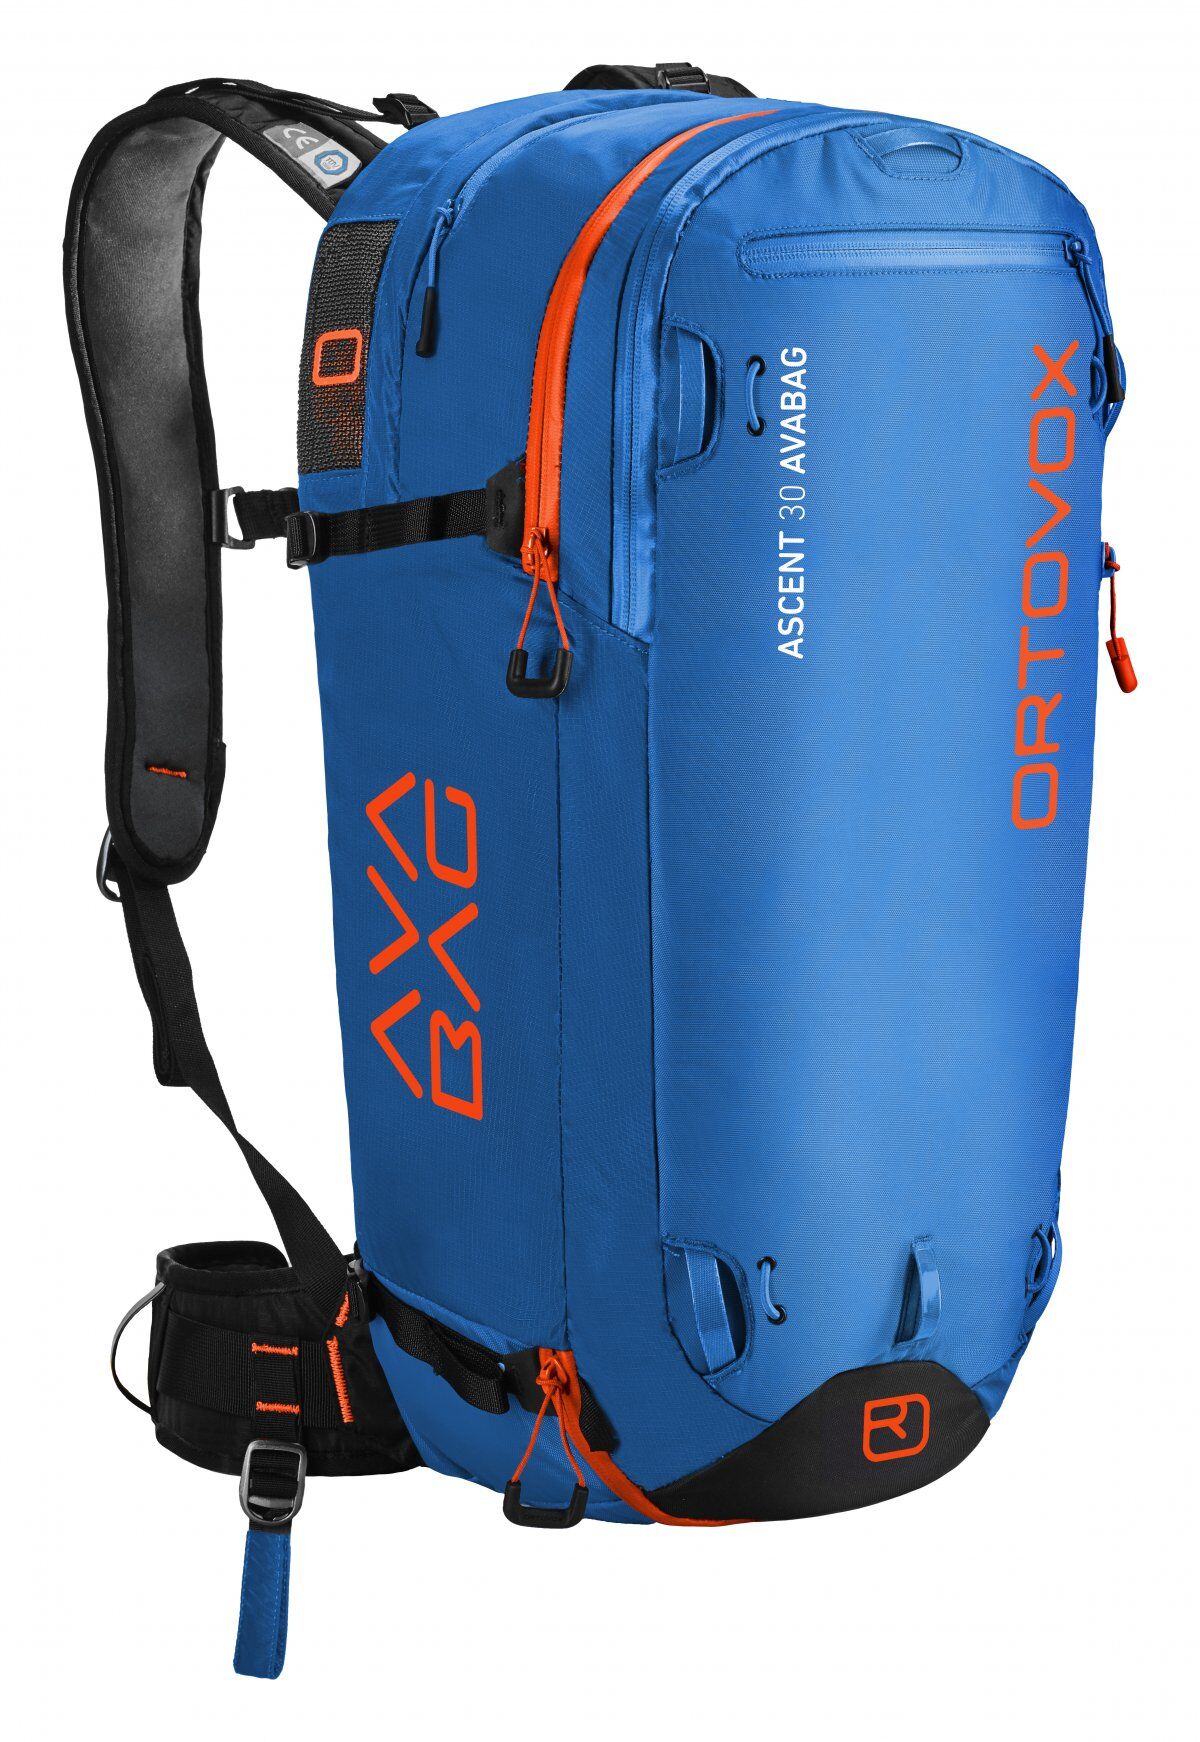 Ortovox - Ascent 30 Avabag - Zaino airbag - Uomo